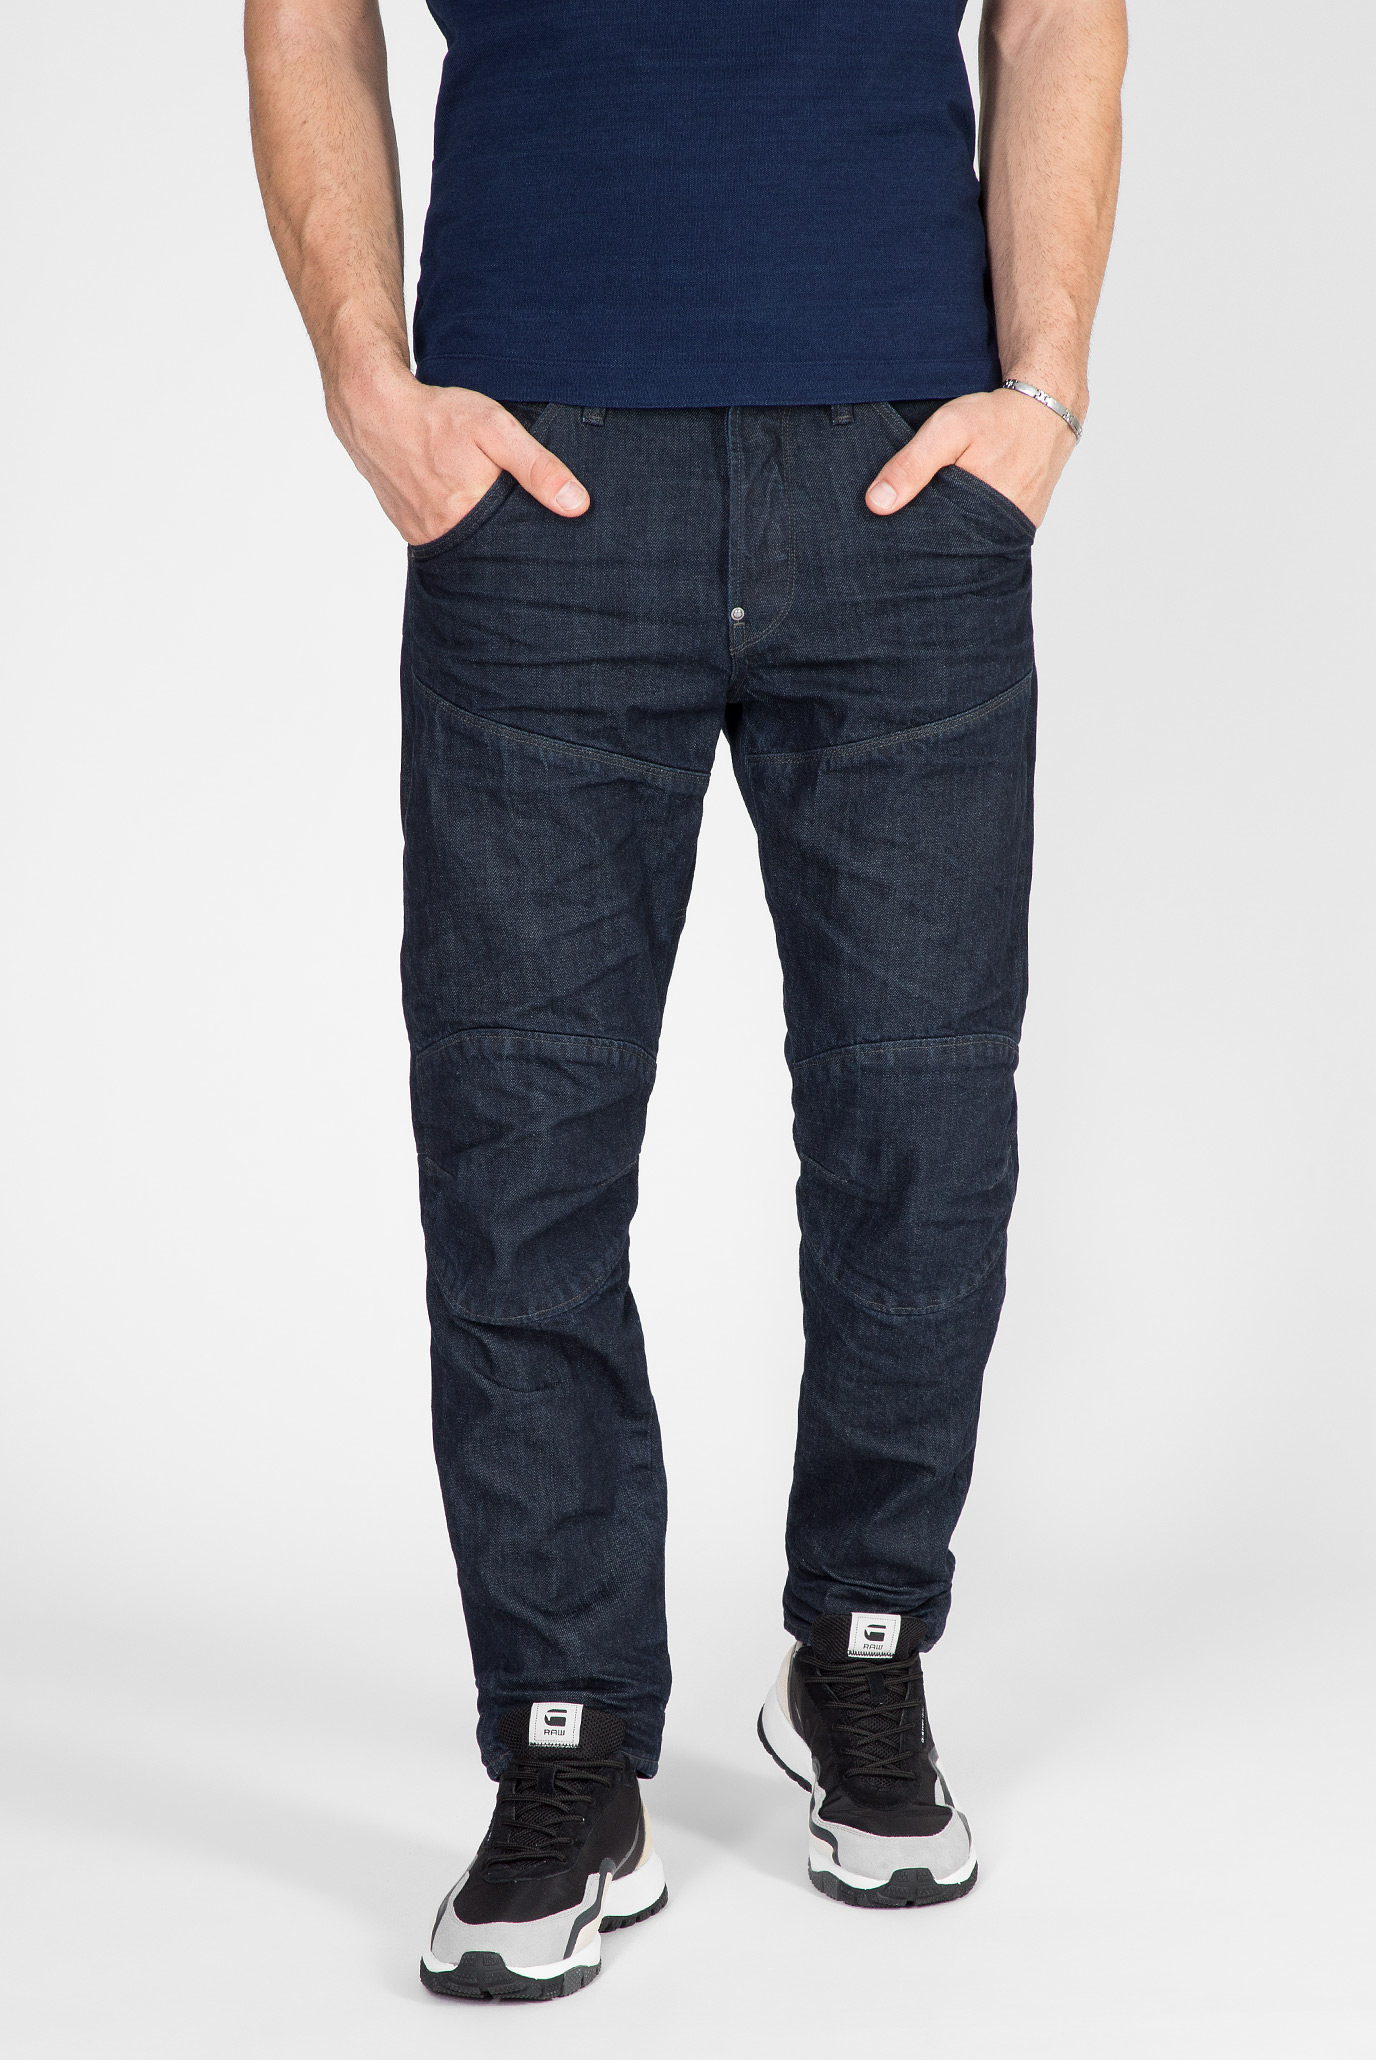 Мужские темно-синие джинсы 5620 3D Original Relaxed tapered 1